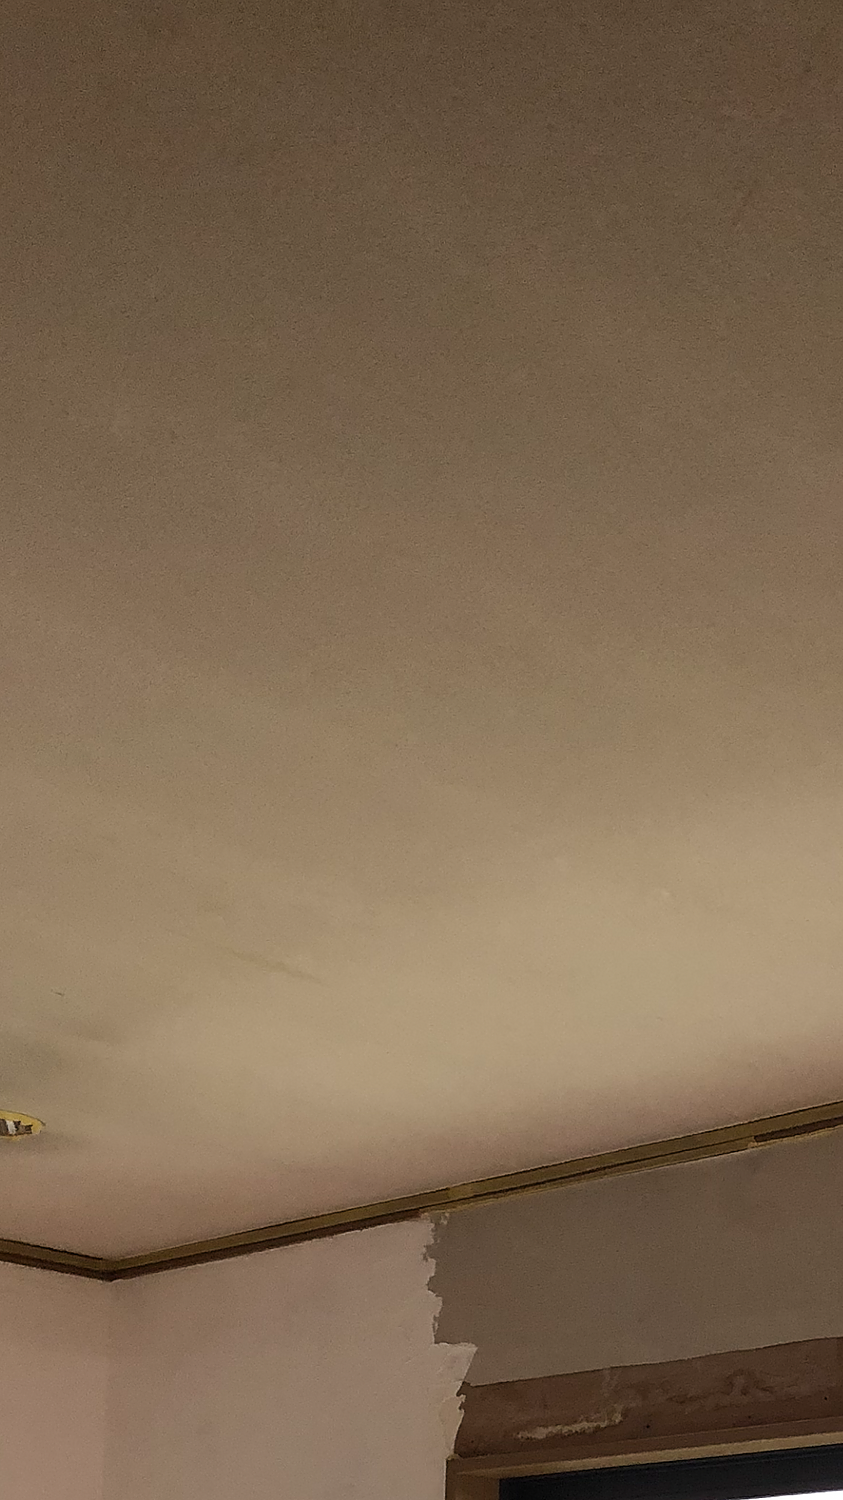 楽天市場 日本製 練り済み 漆喰 kg 約10畳分 部屋 壁 漆喰塗料しっくい レンガ 壁材 室内 塗料 Diy 天井 壁紙 砂壁 しっくい 練り漆喰 リフォーム 塗装 コンクリート 塗り壁 防カビ 石膏ボード 抗菌 煉瓦 れんが 壁塗り 外壁 漆喰壁 セルフ